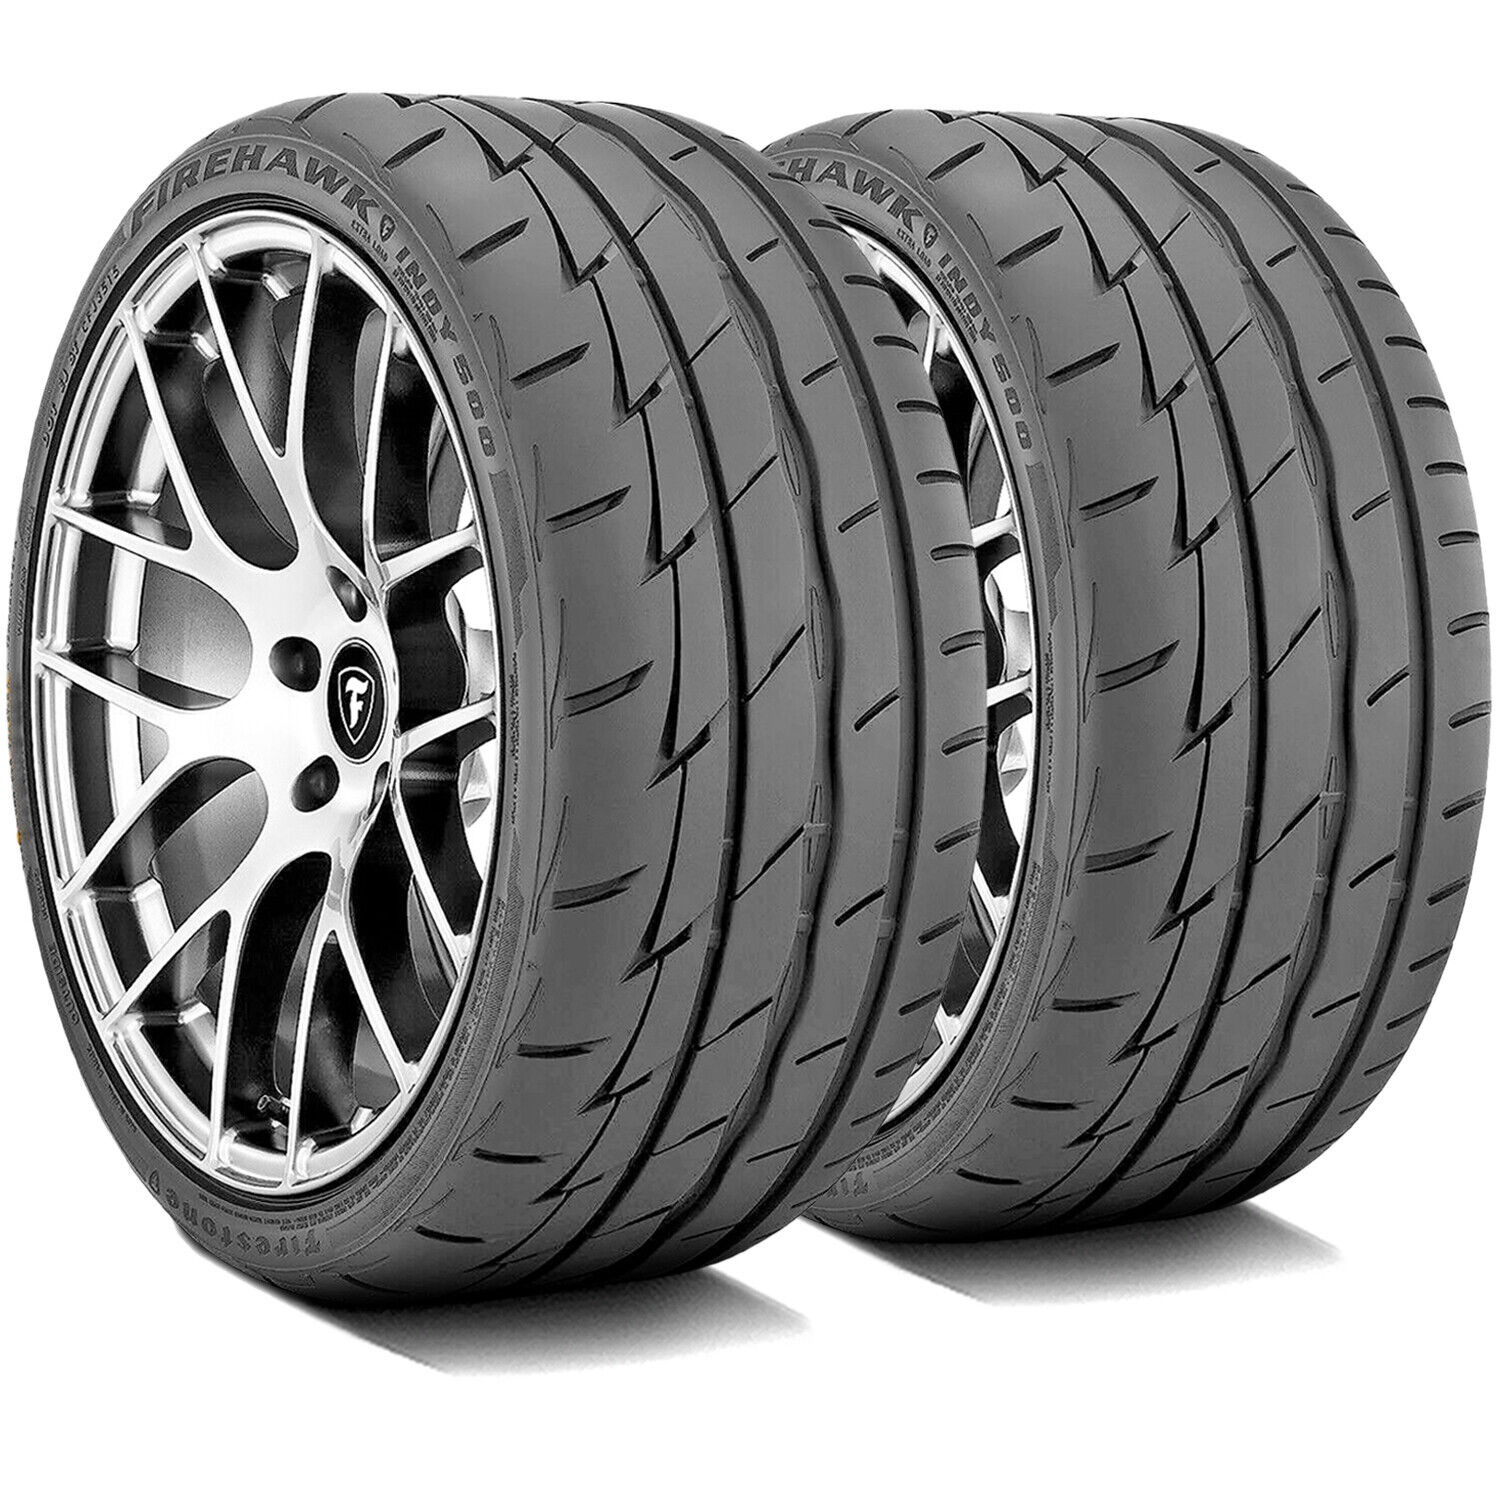 2 Tires Firestone Firehawk Indy 500 245/45R17 99W XL High Performance